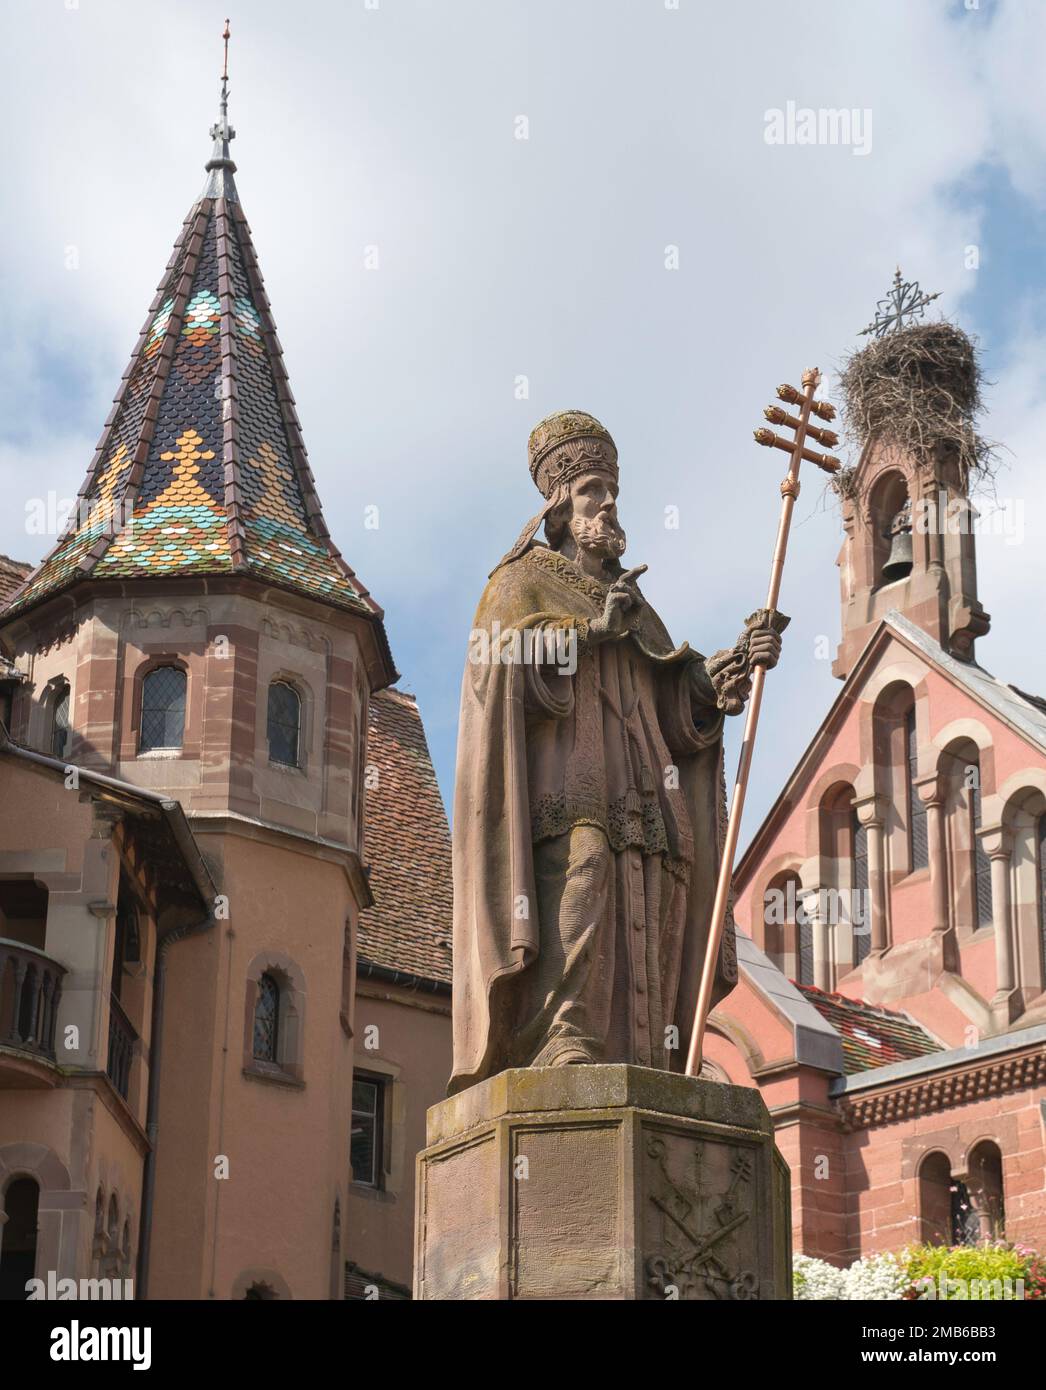 Saint-Léon (Pope Leo 1)  statue and fountain in Saint-Léon Square,Place du Chateau, Eguisheim, Alsace, France Stock Photo